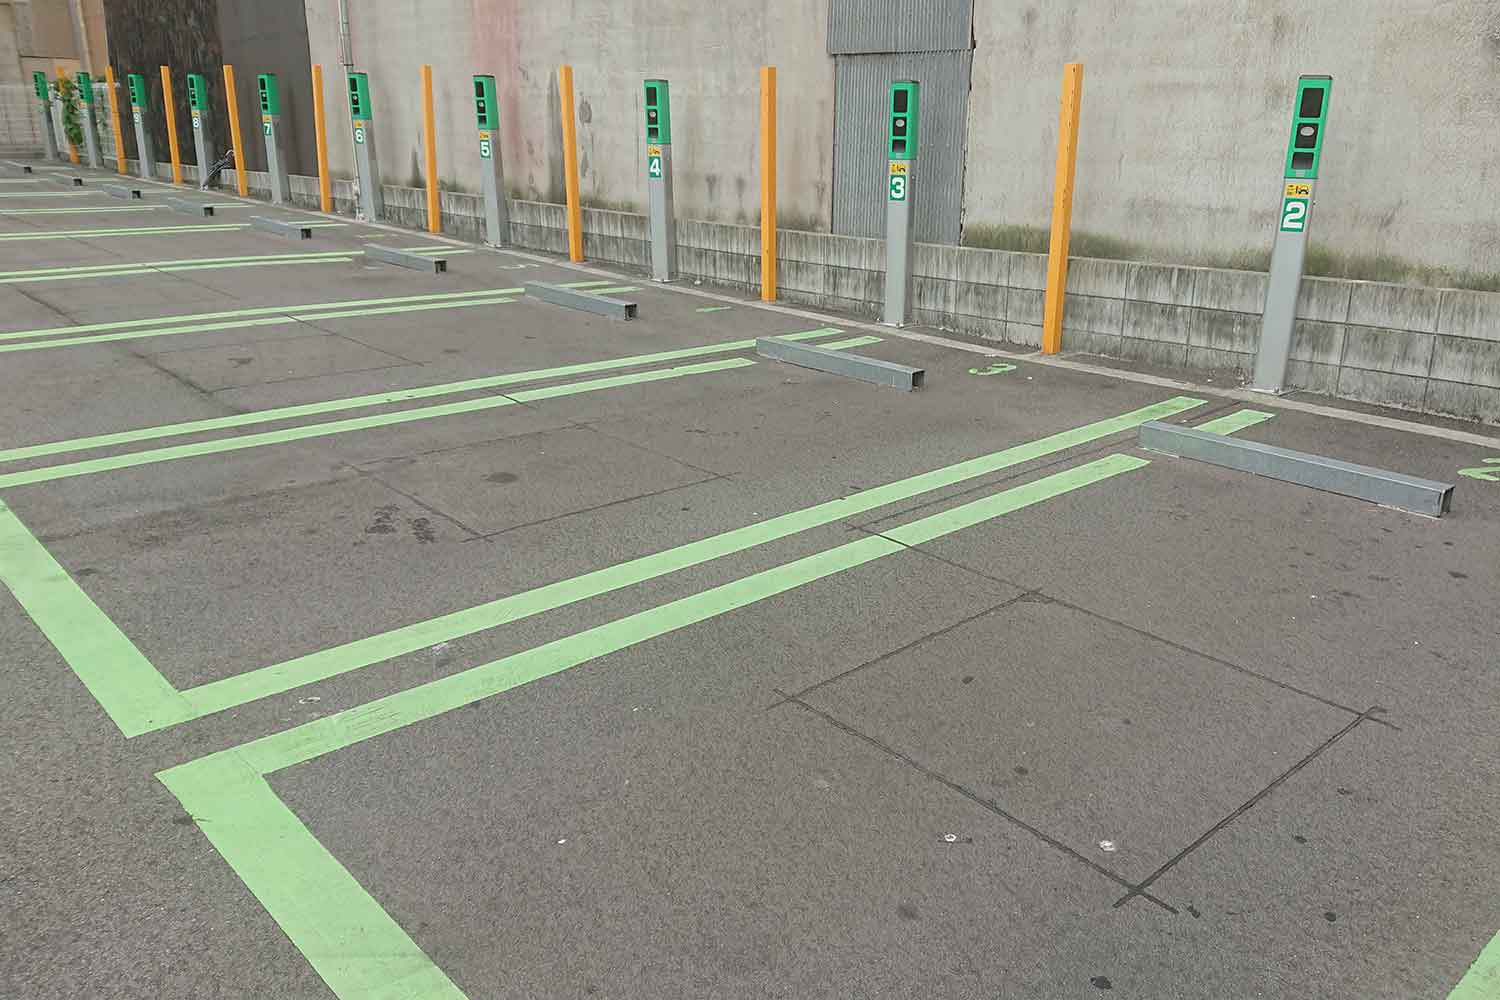 じつはゲート式やフラップ式よりも不正利用が少ないフラップ板のない駐車場